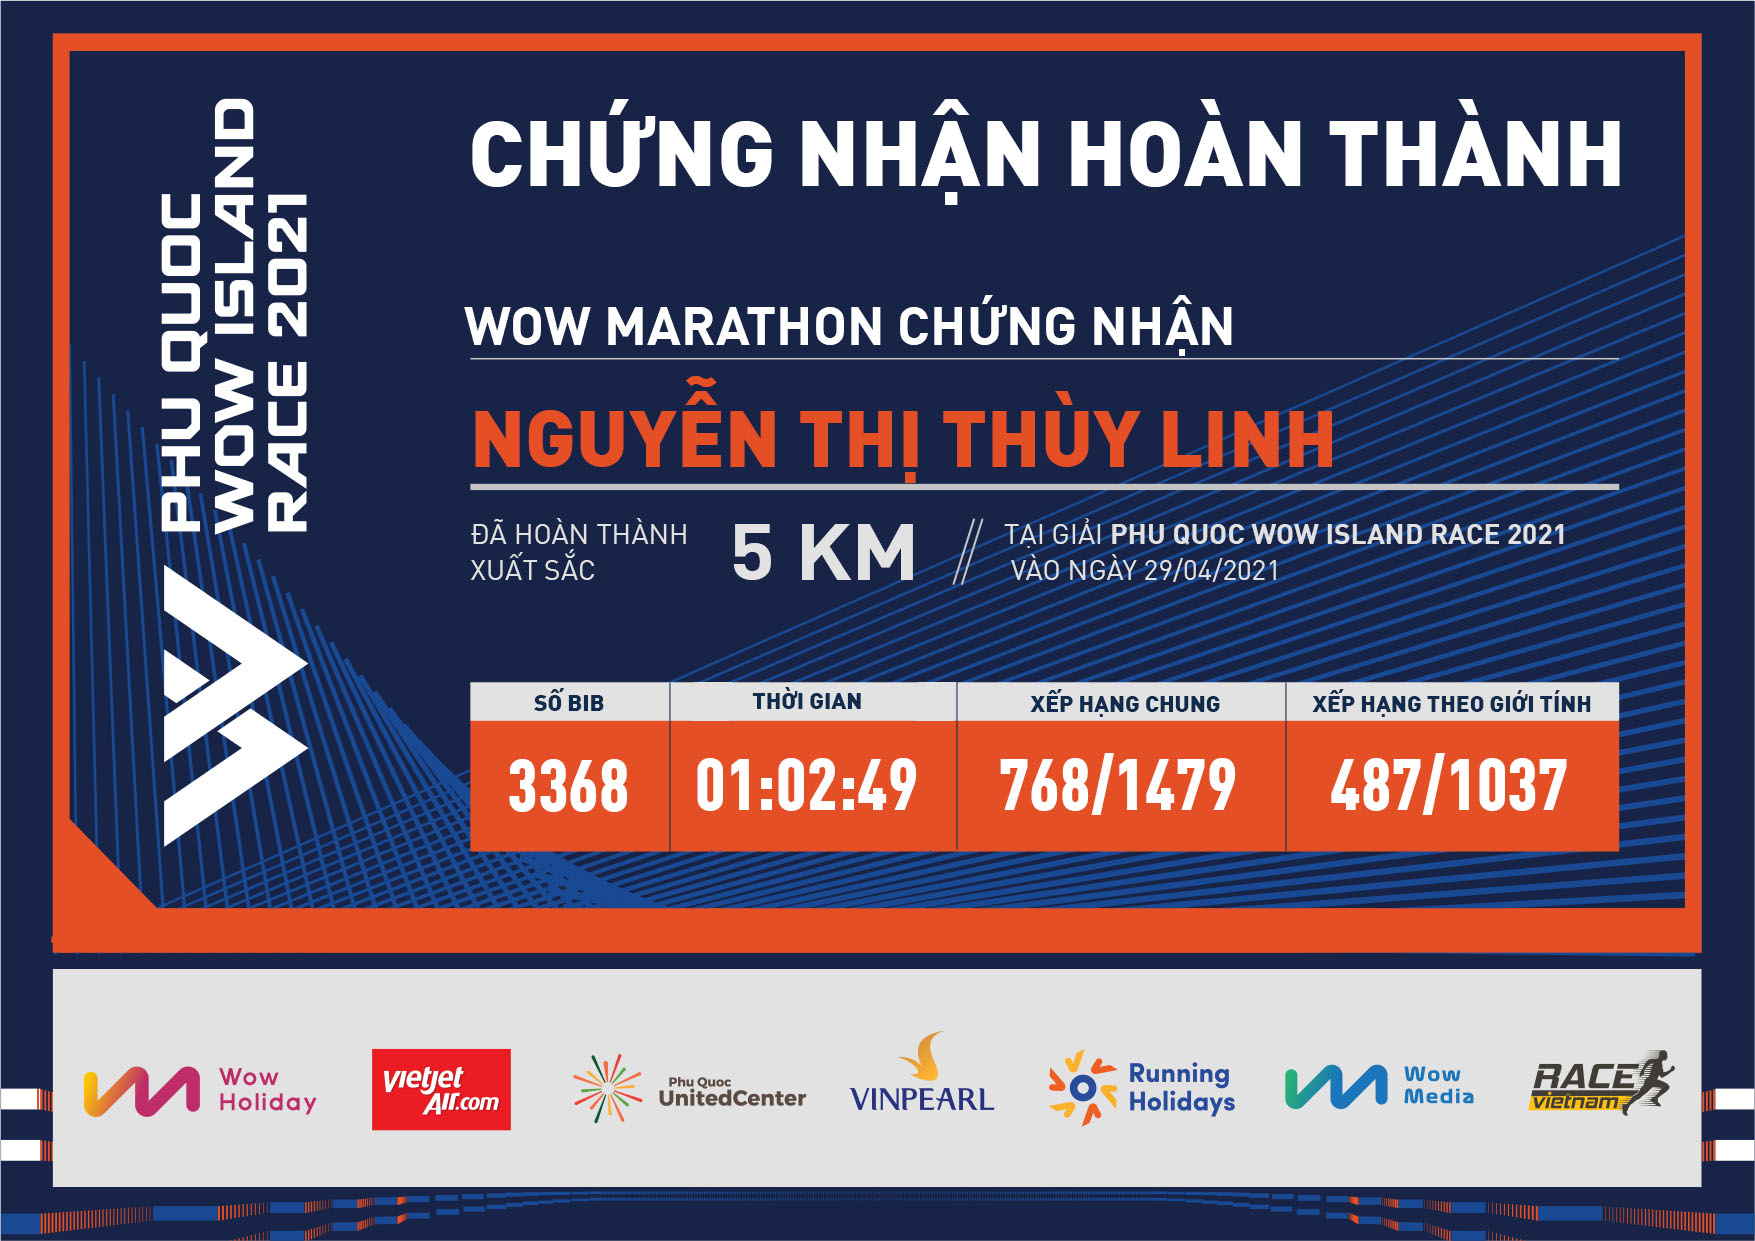 3368 - Nguyễn Thị Thùy Linh